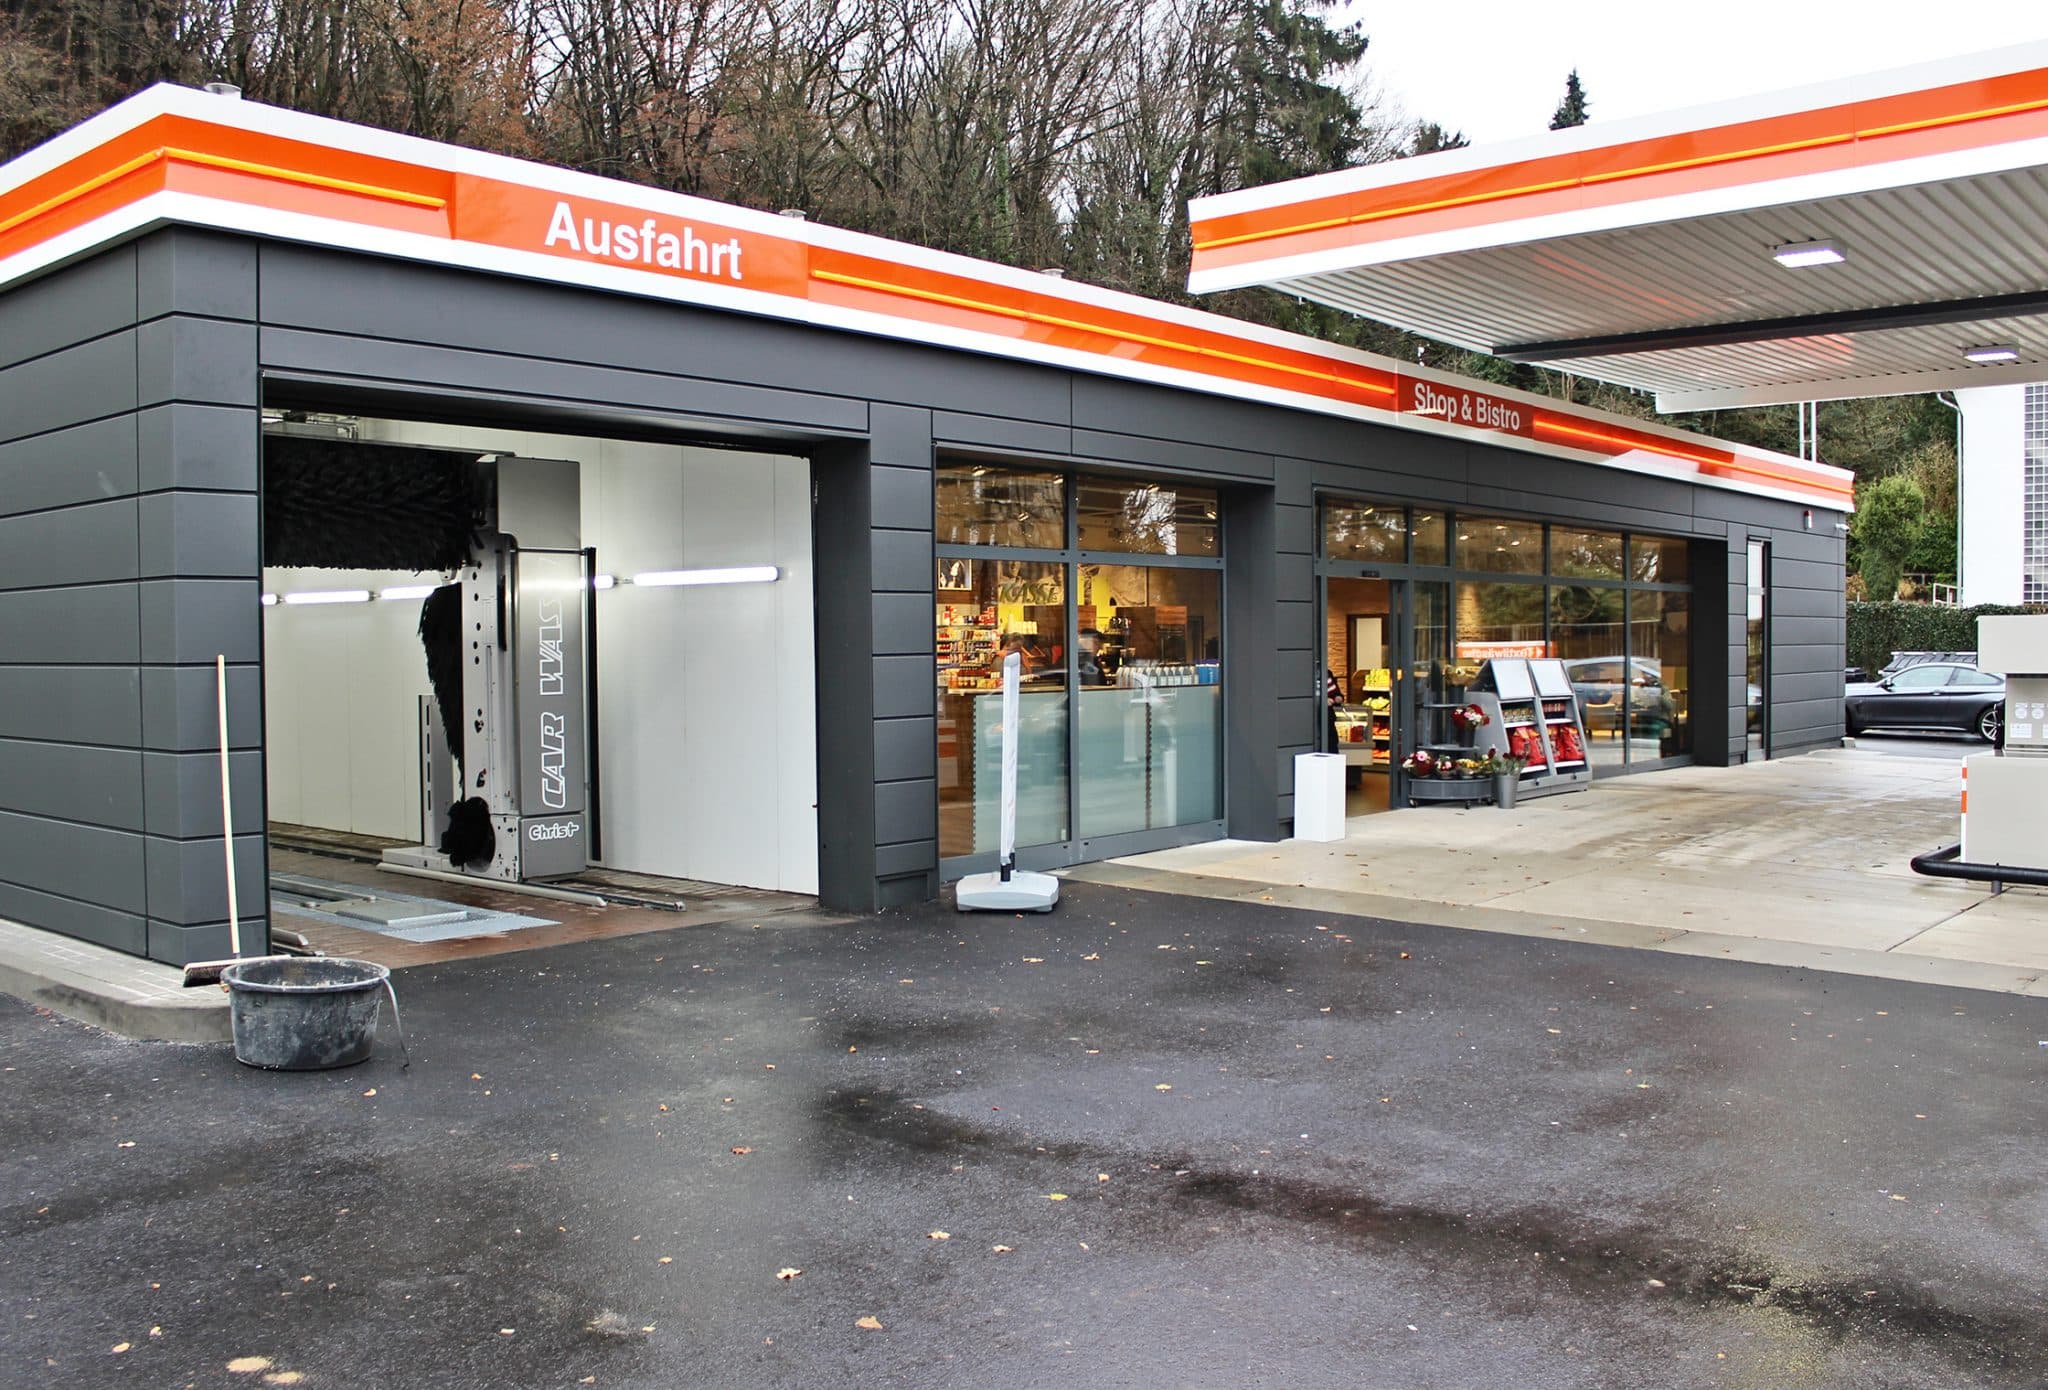 BFT Tankstelle in Lohmar mit neuem Gesicht